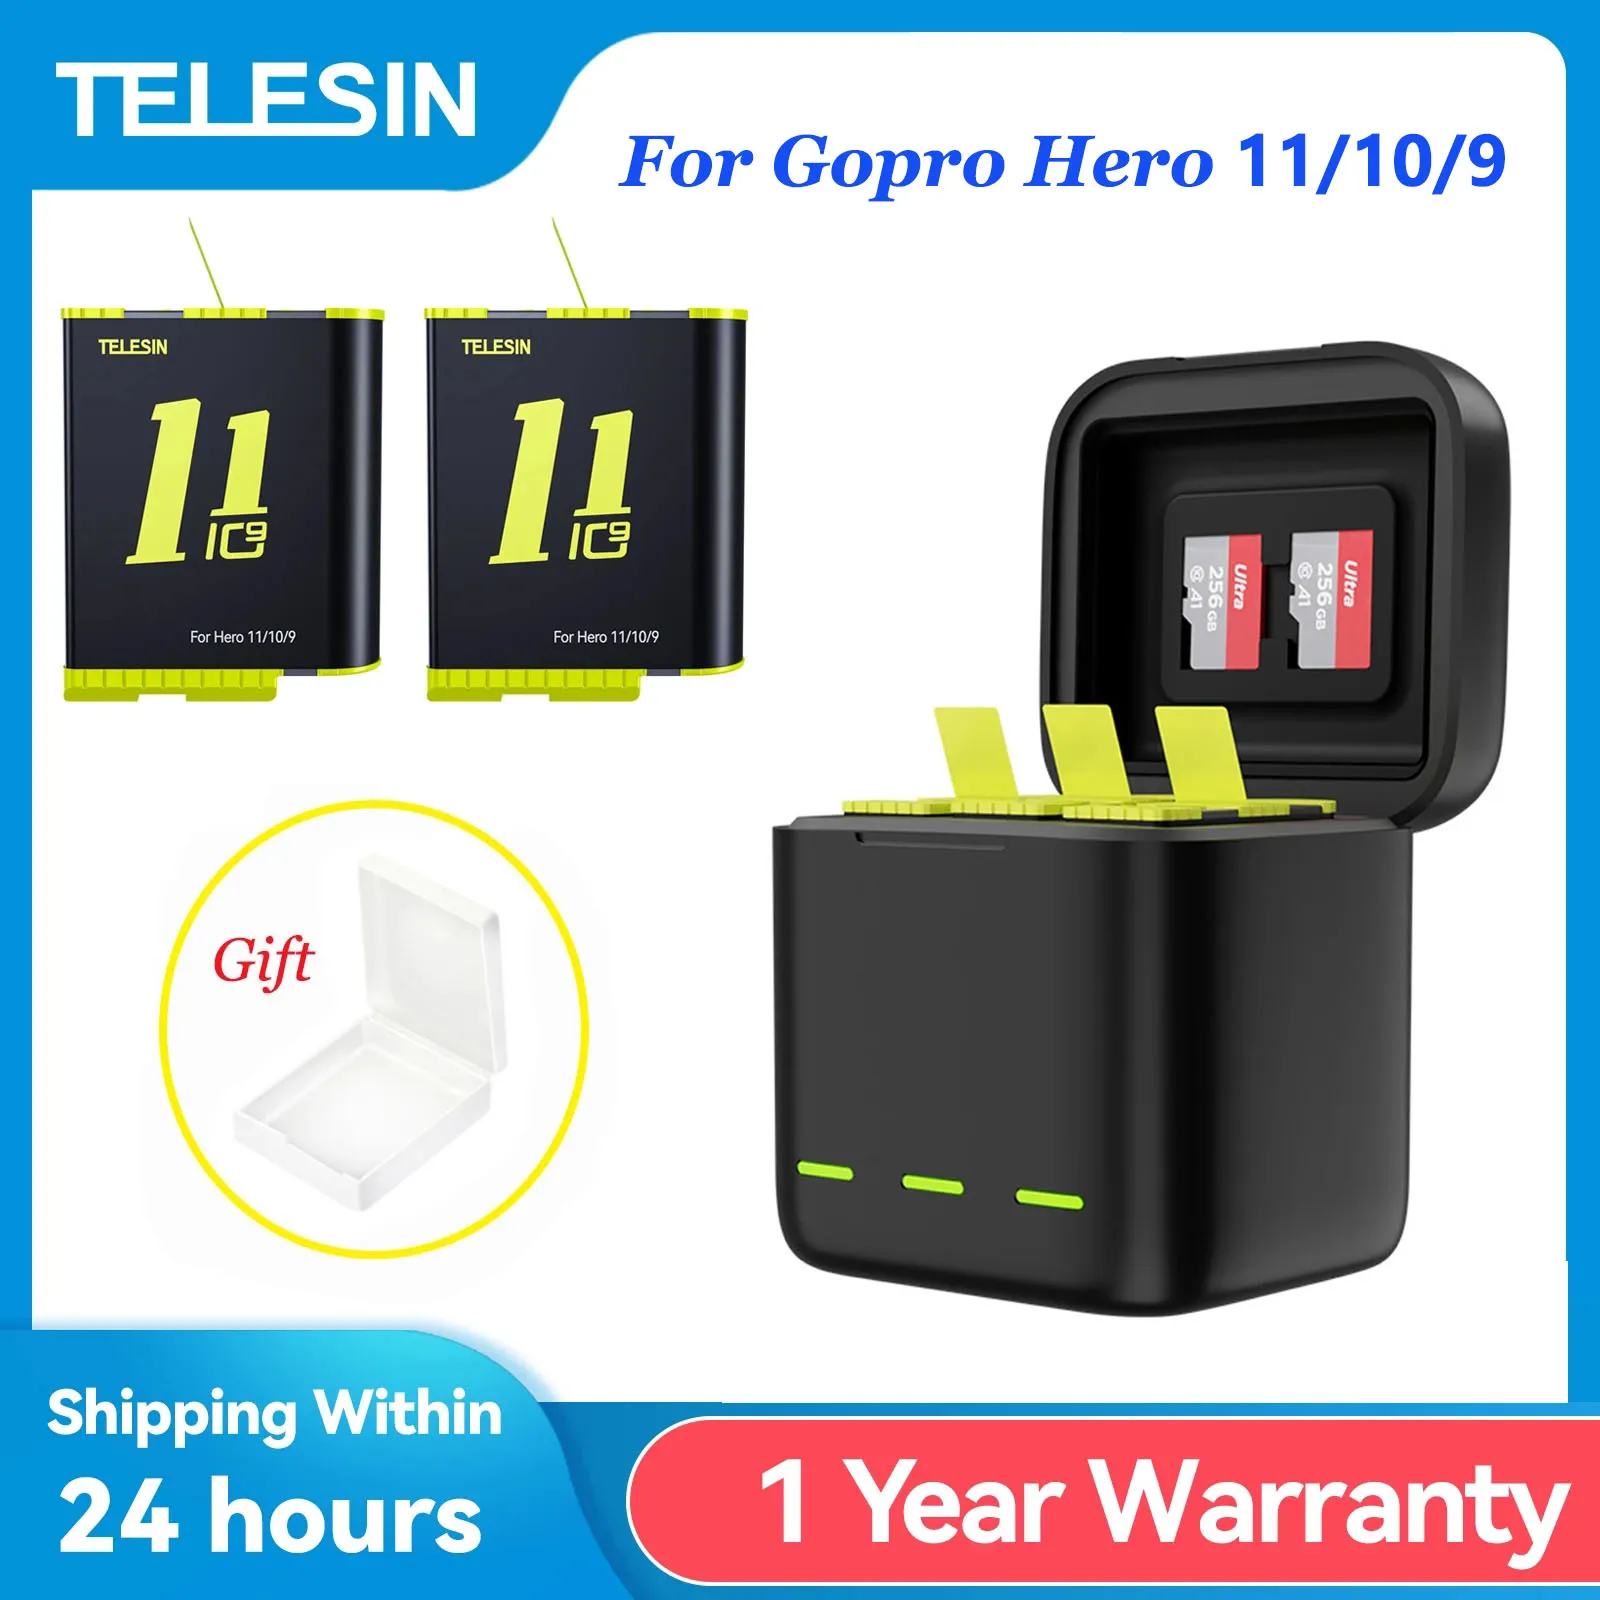 

Зарядное устройство TELESIN со светодиодной подсветкой, 3 слота, футляр для хранения TF-карт для камер GoPro Hero 11, 10, 9, аккумулятор 1750 мАч, аксессуары для GoPro 11